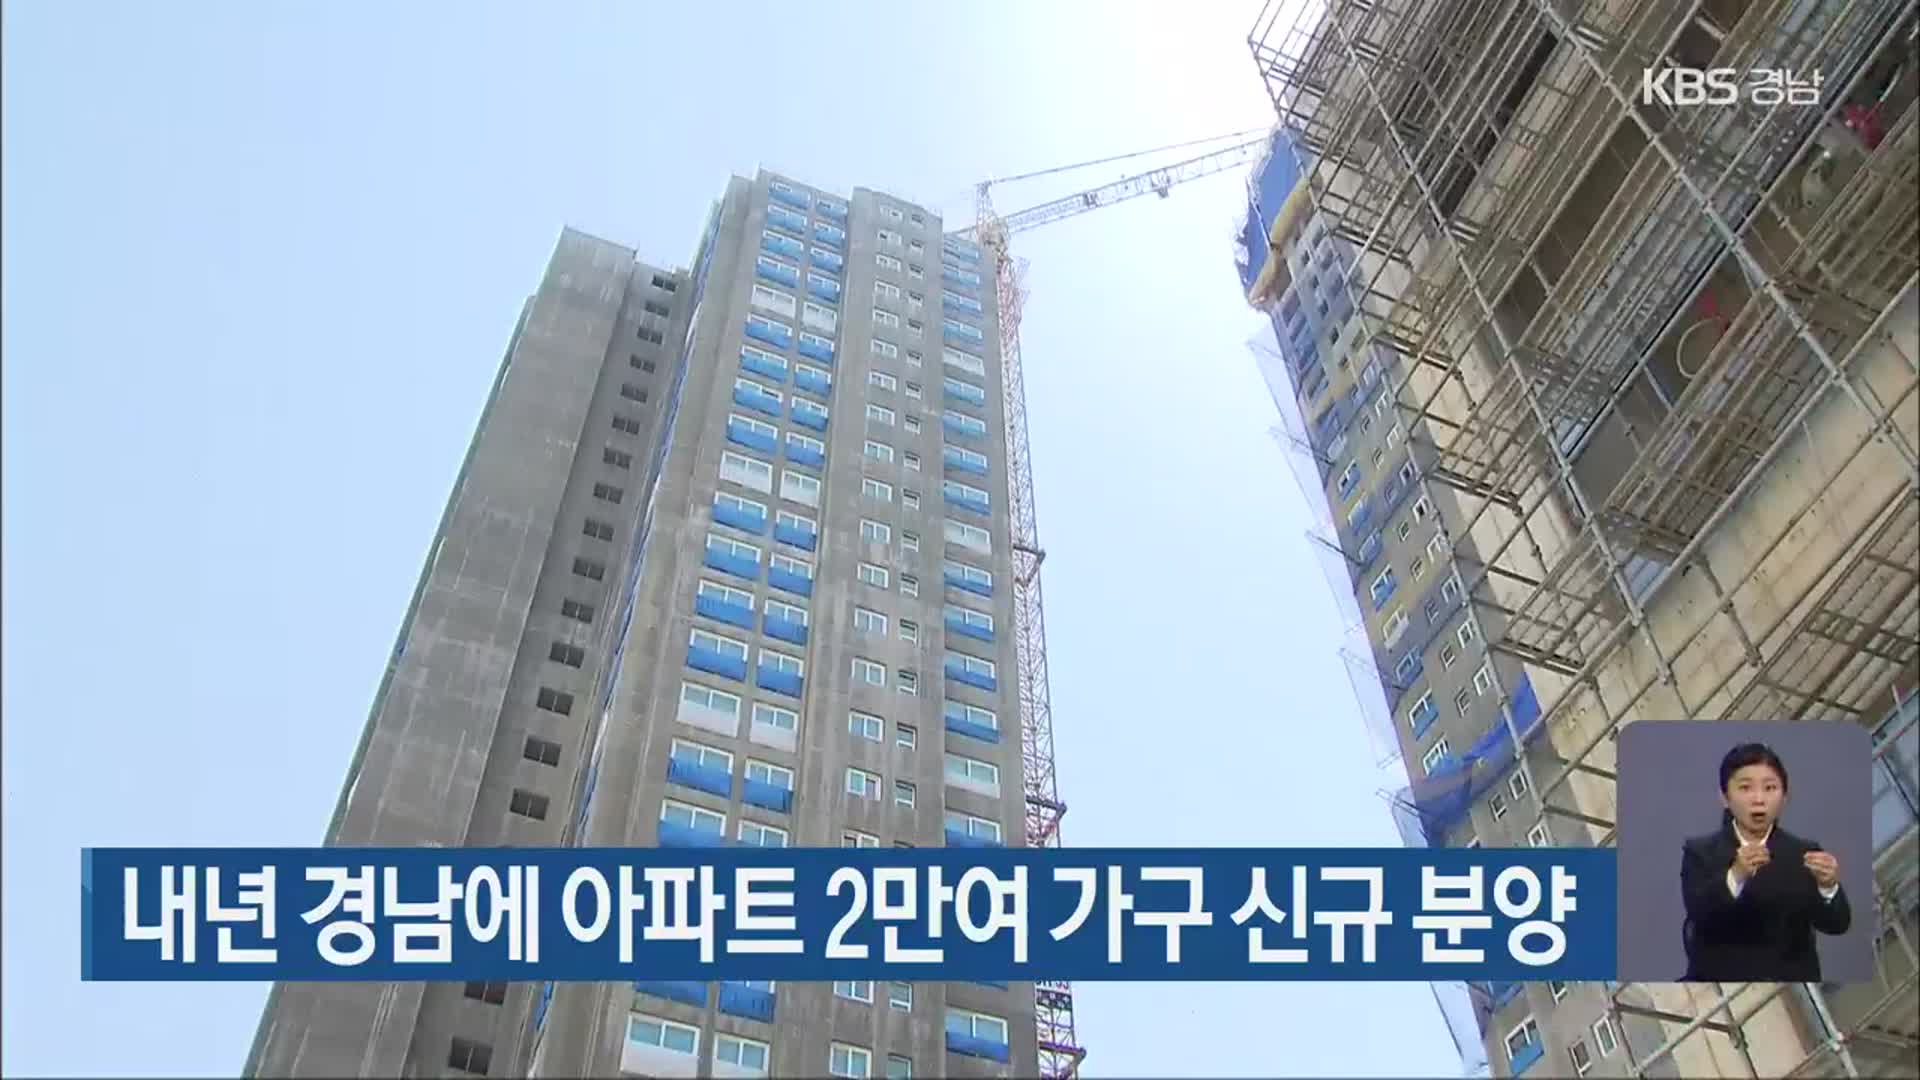 내년 경남에 아파트 2만여 가구 신규 분양